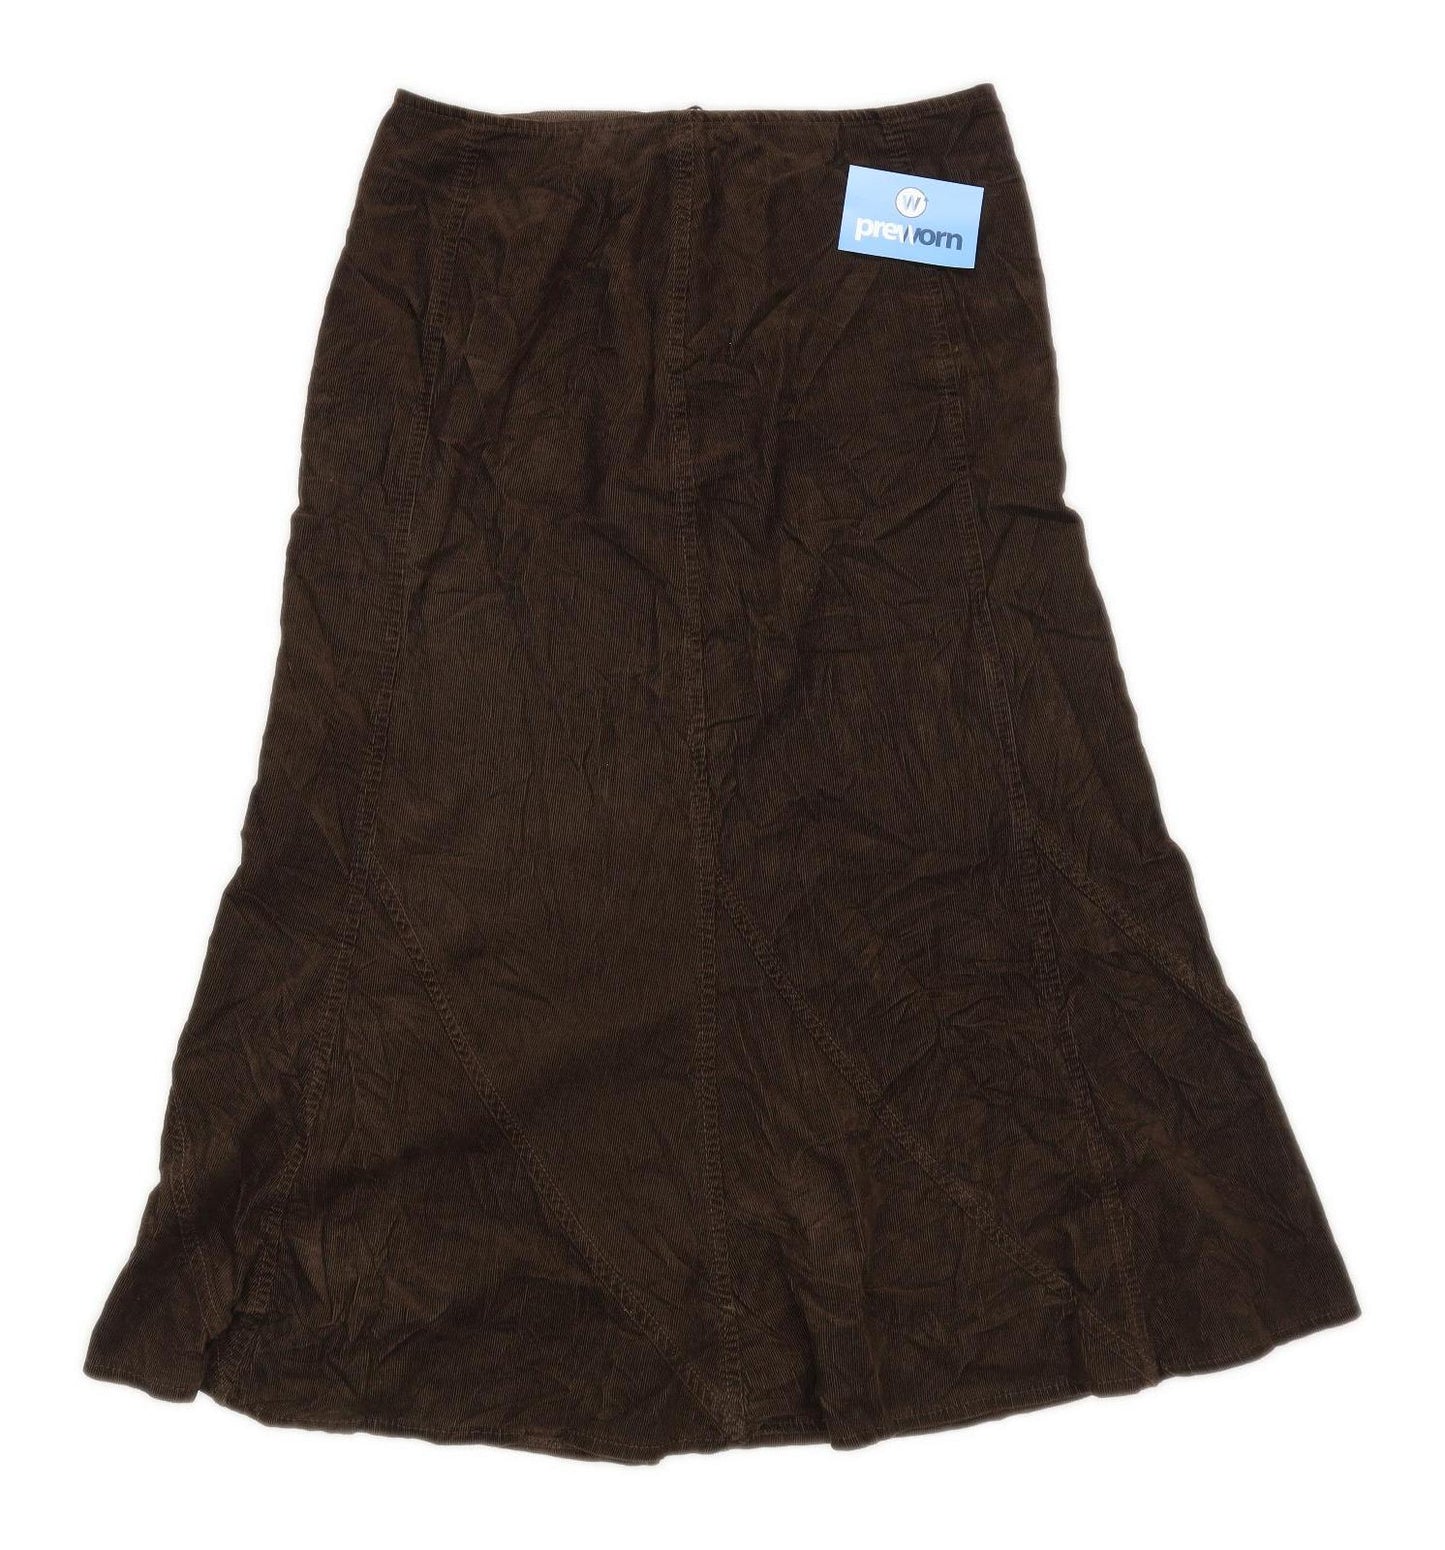 Marks & Spencer Womens Size 10 Cotton Brown Flare Skirt (Regular)